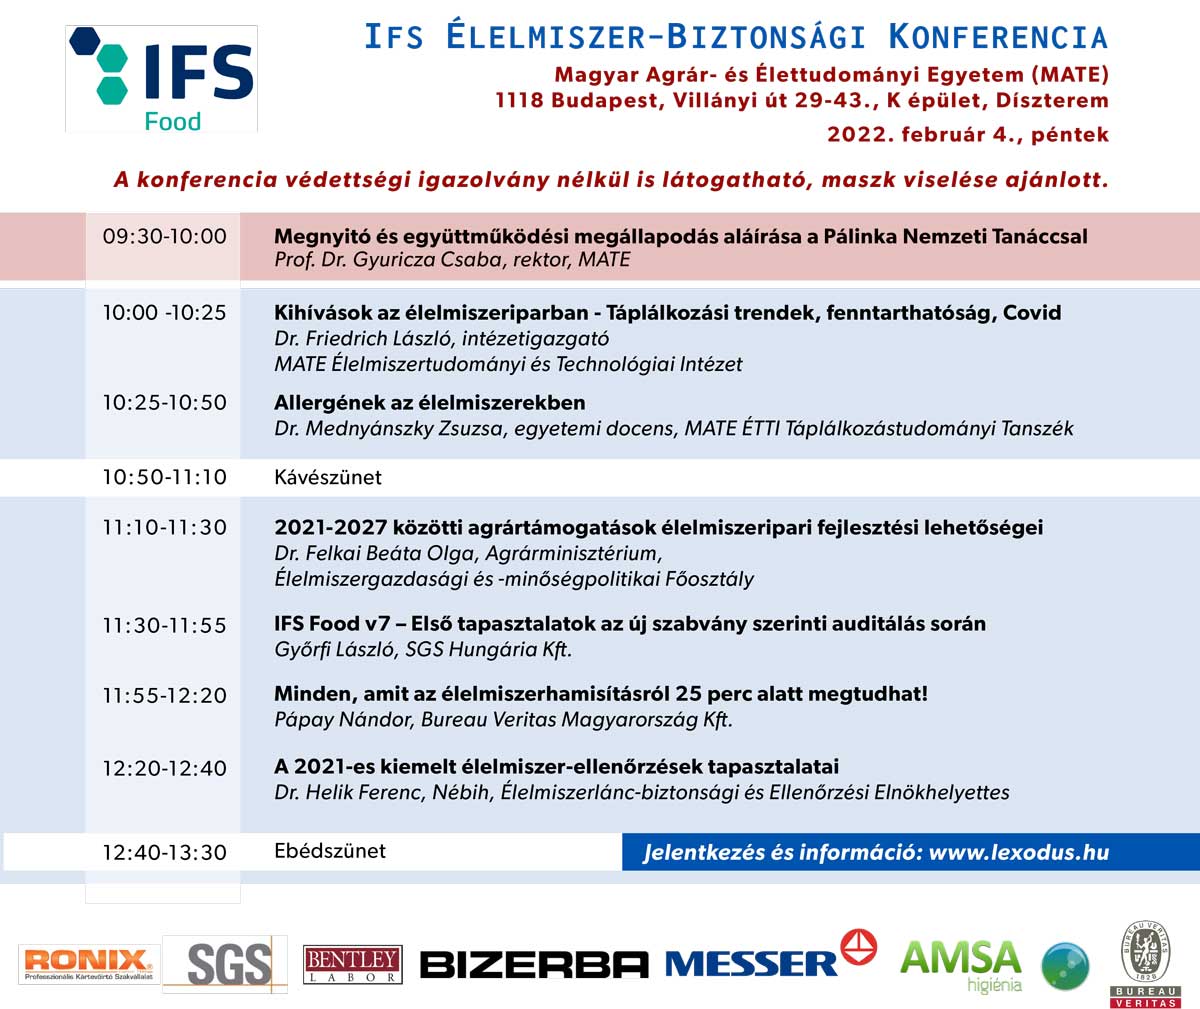 IFS elelmiszer biztonsagi konferencia program 2022 02 04 1